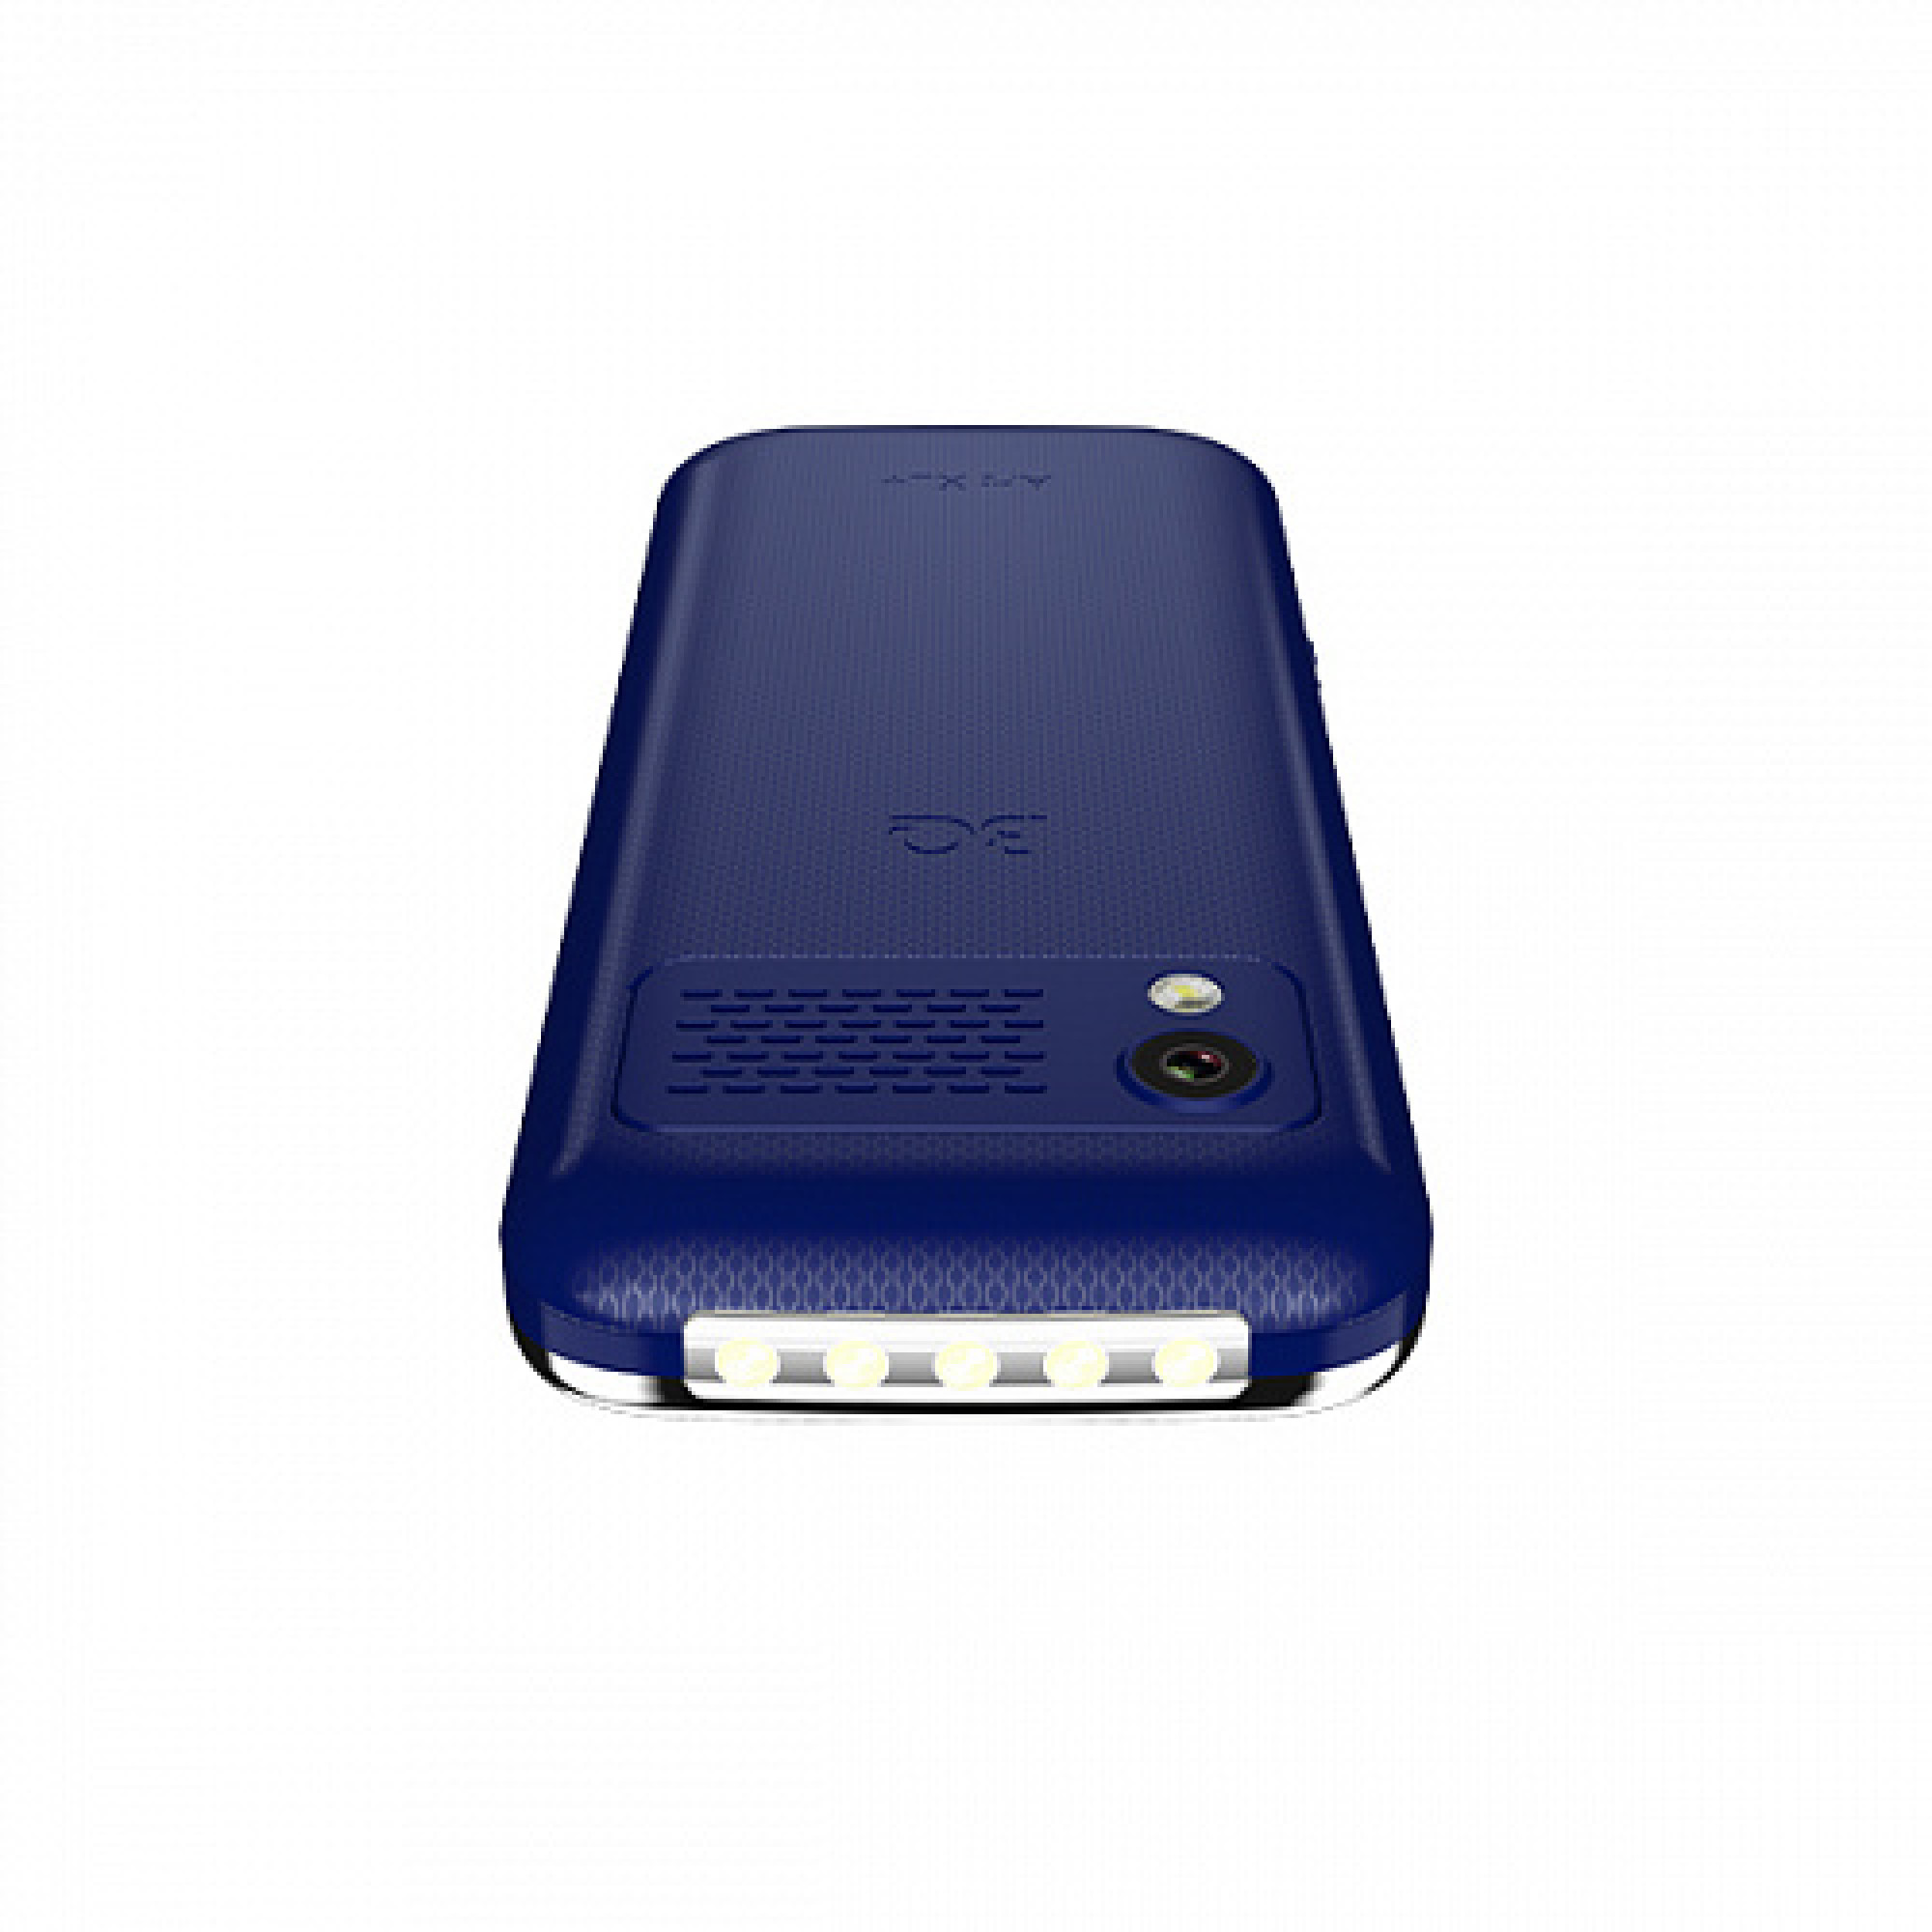 Мобильный телефон BQ BQ-2838 Art XL+ (синий)